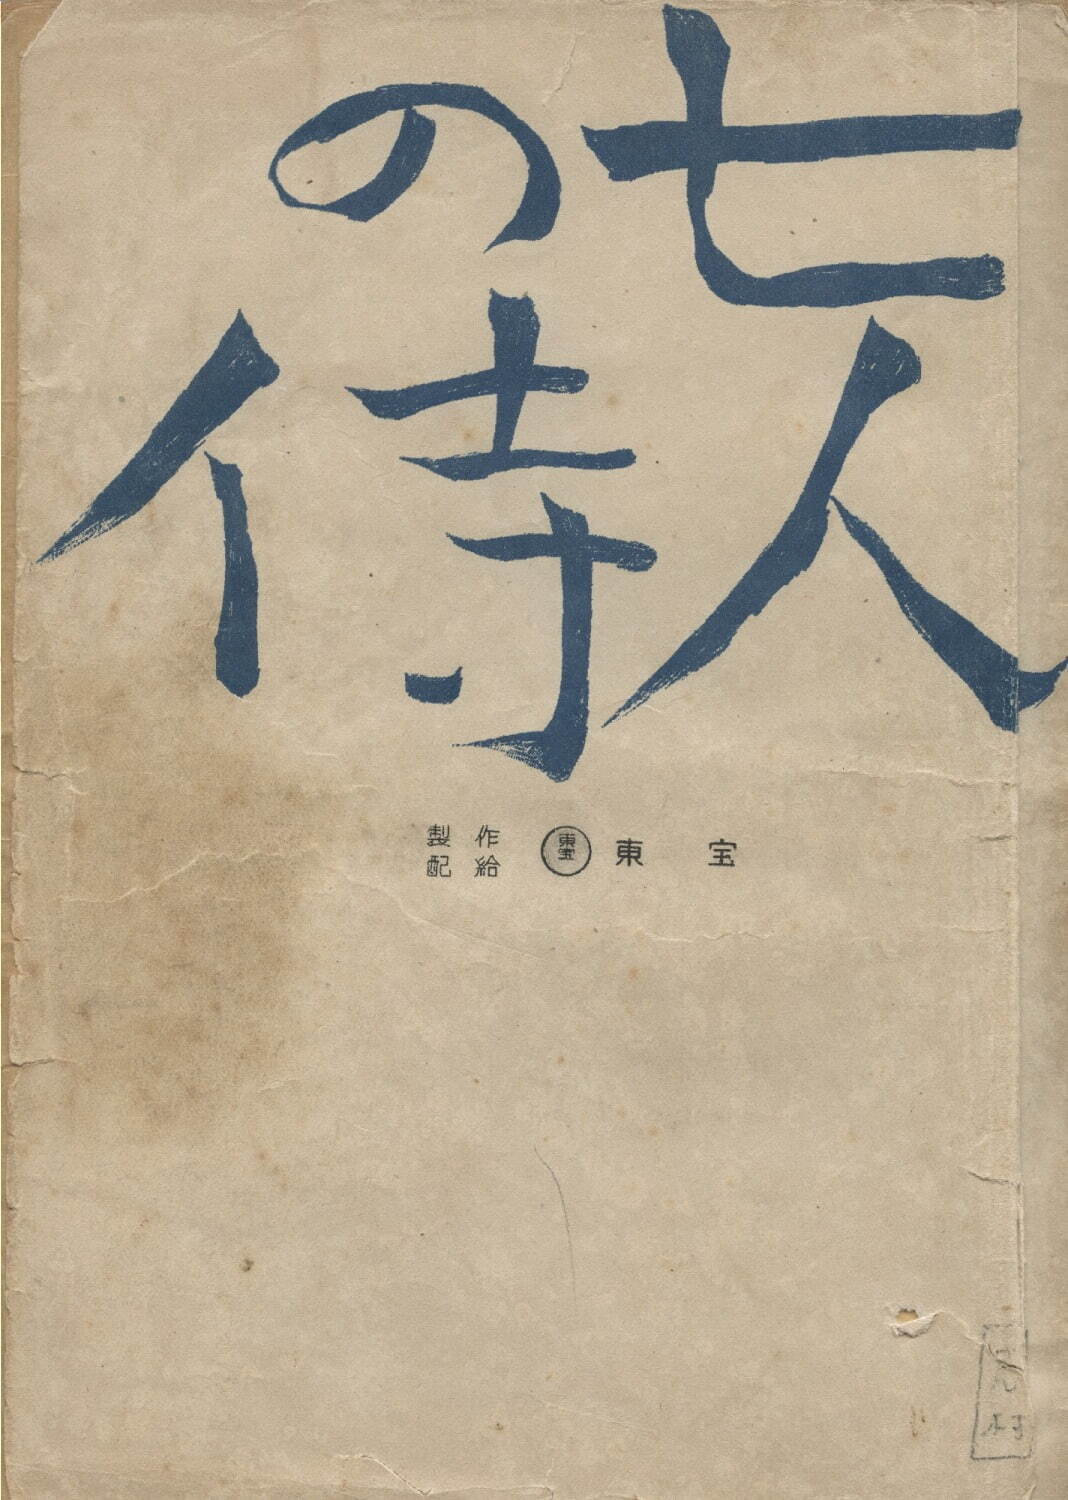 「七人の侍」志村喬旧蔵台本(1953年) 国立映画アーカイブ所蔵